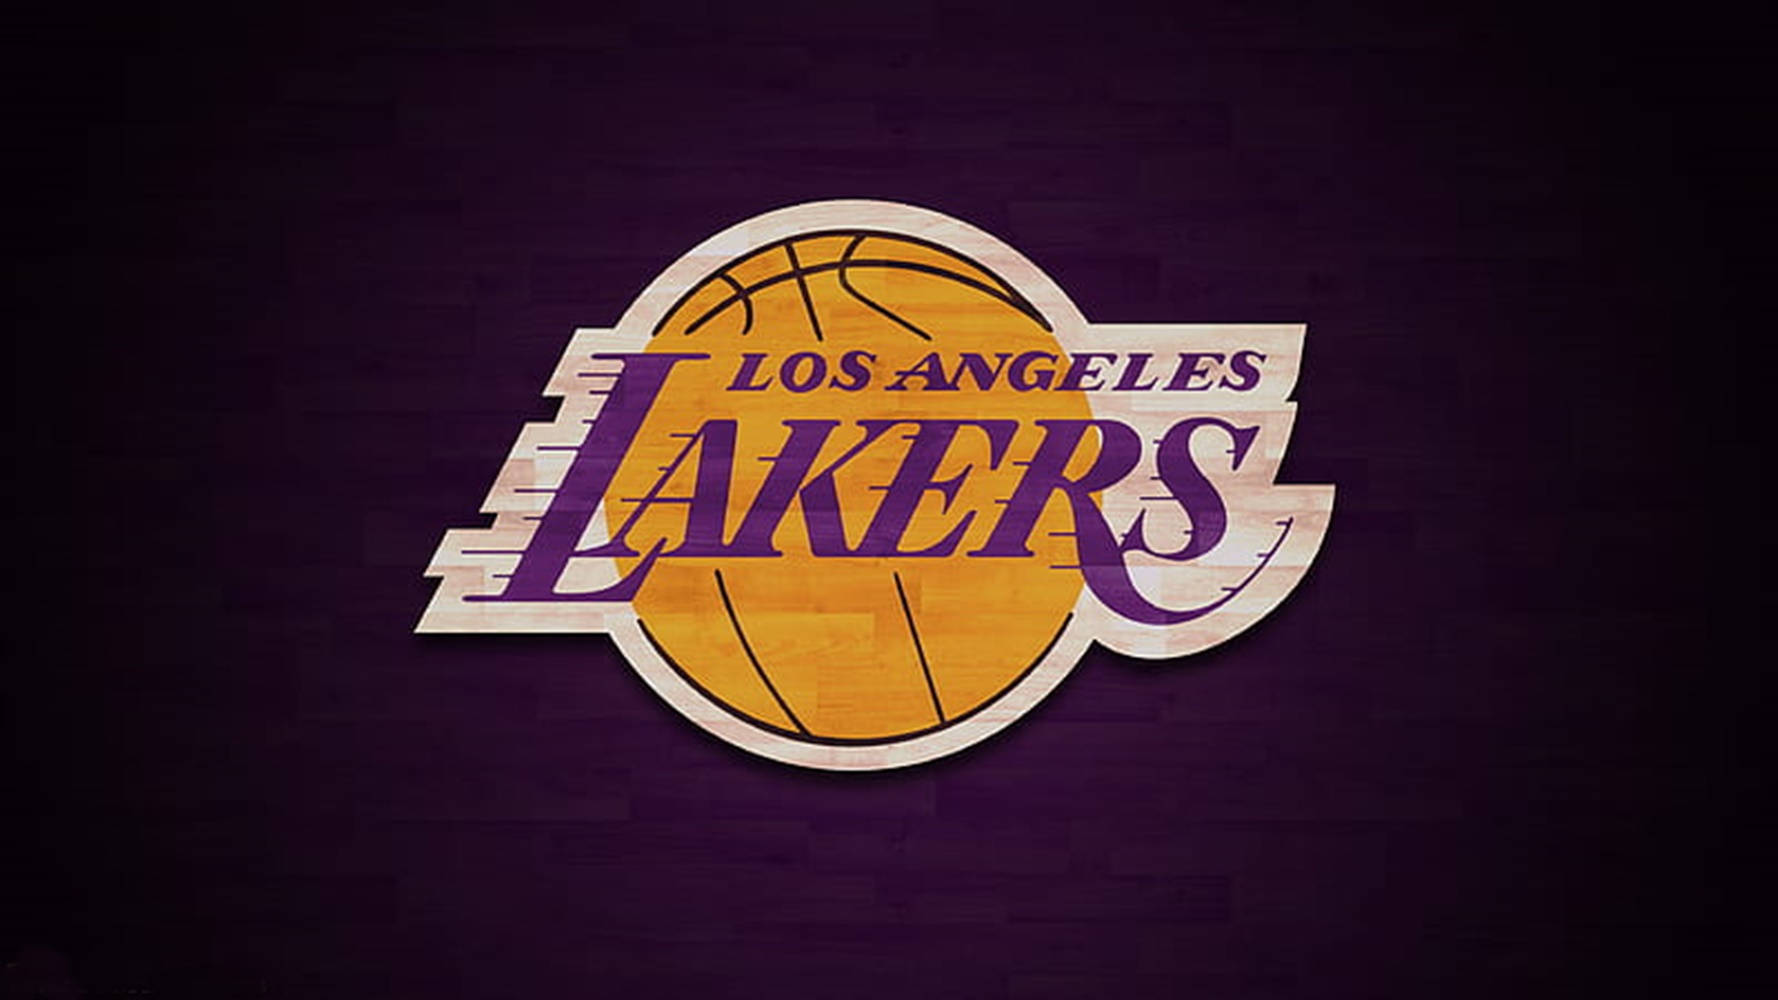 Logotipode Los Lakers En Color Púrpura Oscuro. Fondo de pantalla